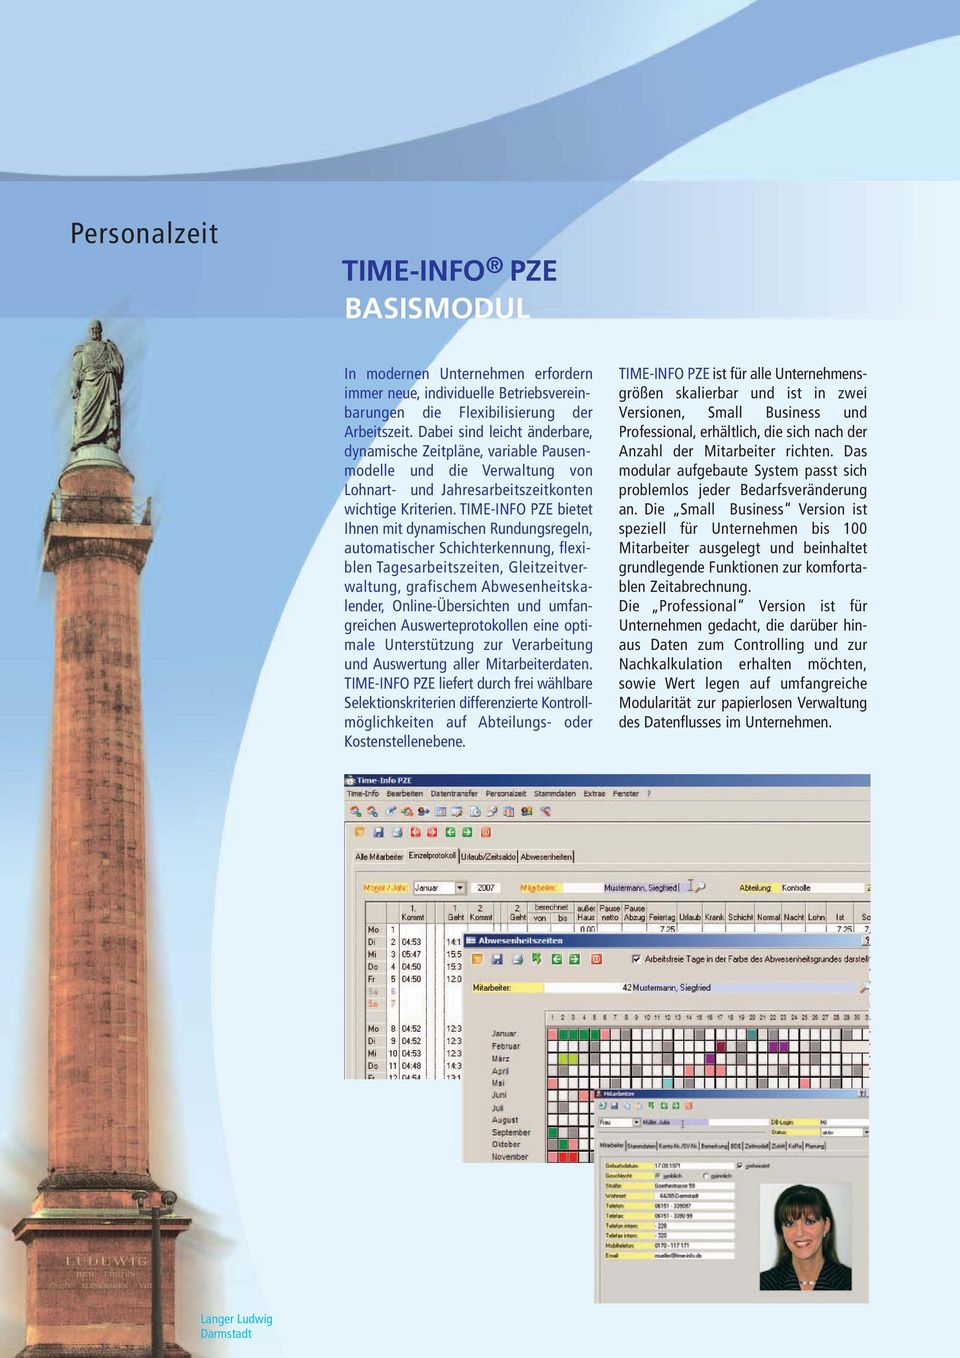 TIME-INFO PZE bietet Ihnen mit dynamischen Rundungsregeln, automatischer Schichterkennung, flexiblen Tagesarbeitszeiten, Gleitzeitverwaltung, grafischem Abwesenheitskalender, Online-Übersichten und